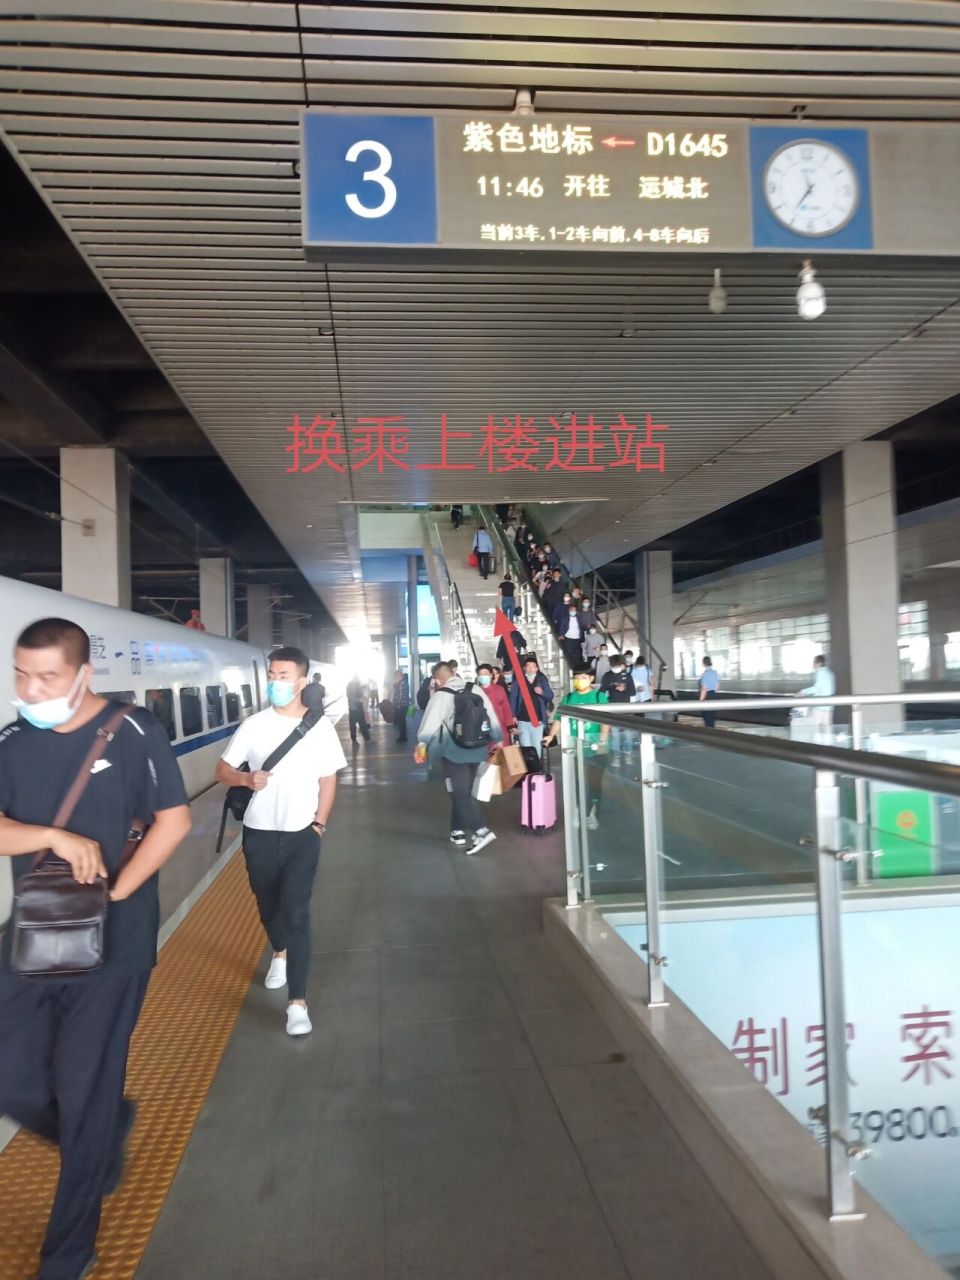 25日从藁城南站到石家庄站进行换乘的,站内换乘更方便更节约时间